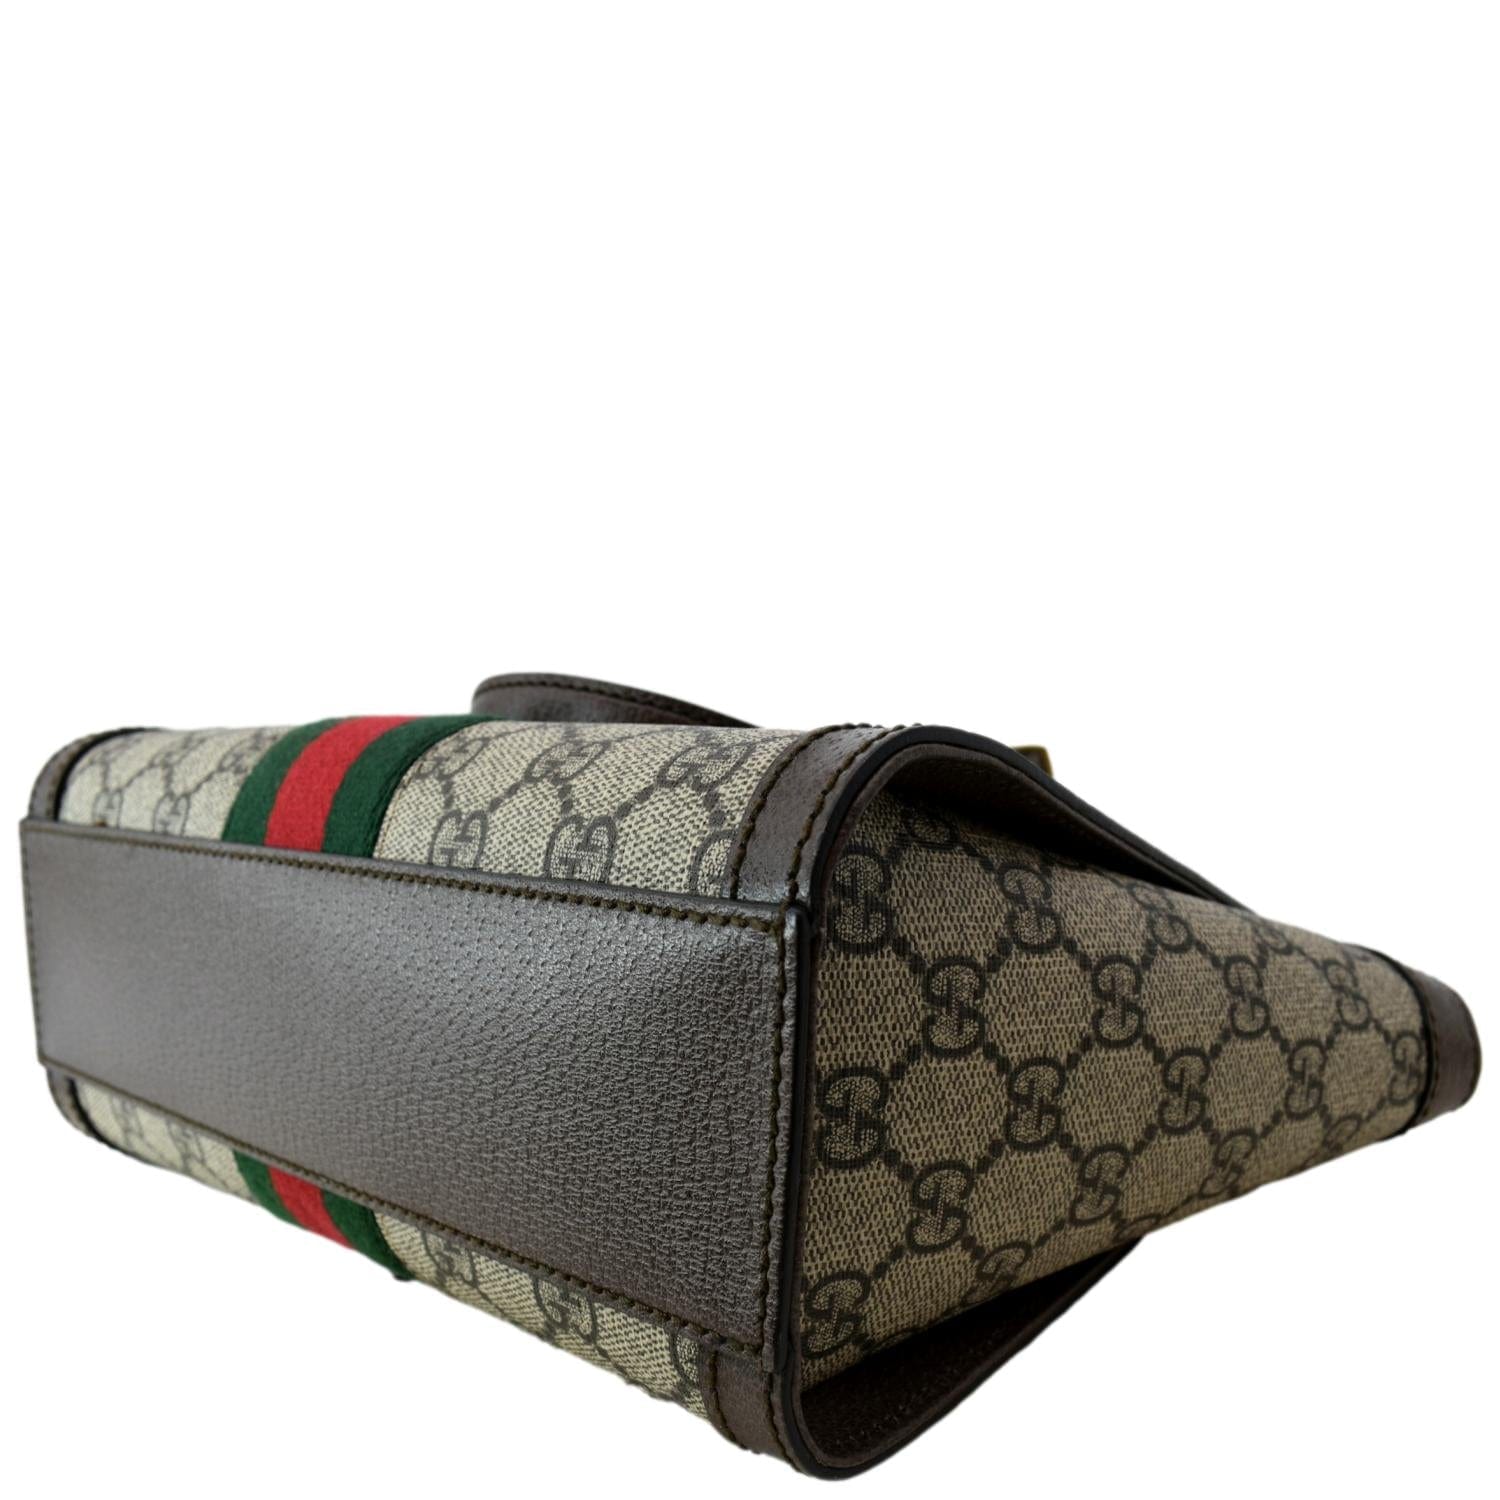 Gucci GG Supreme Ophidia Small GG Tote Bag